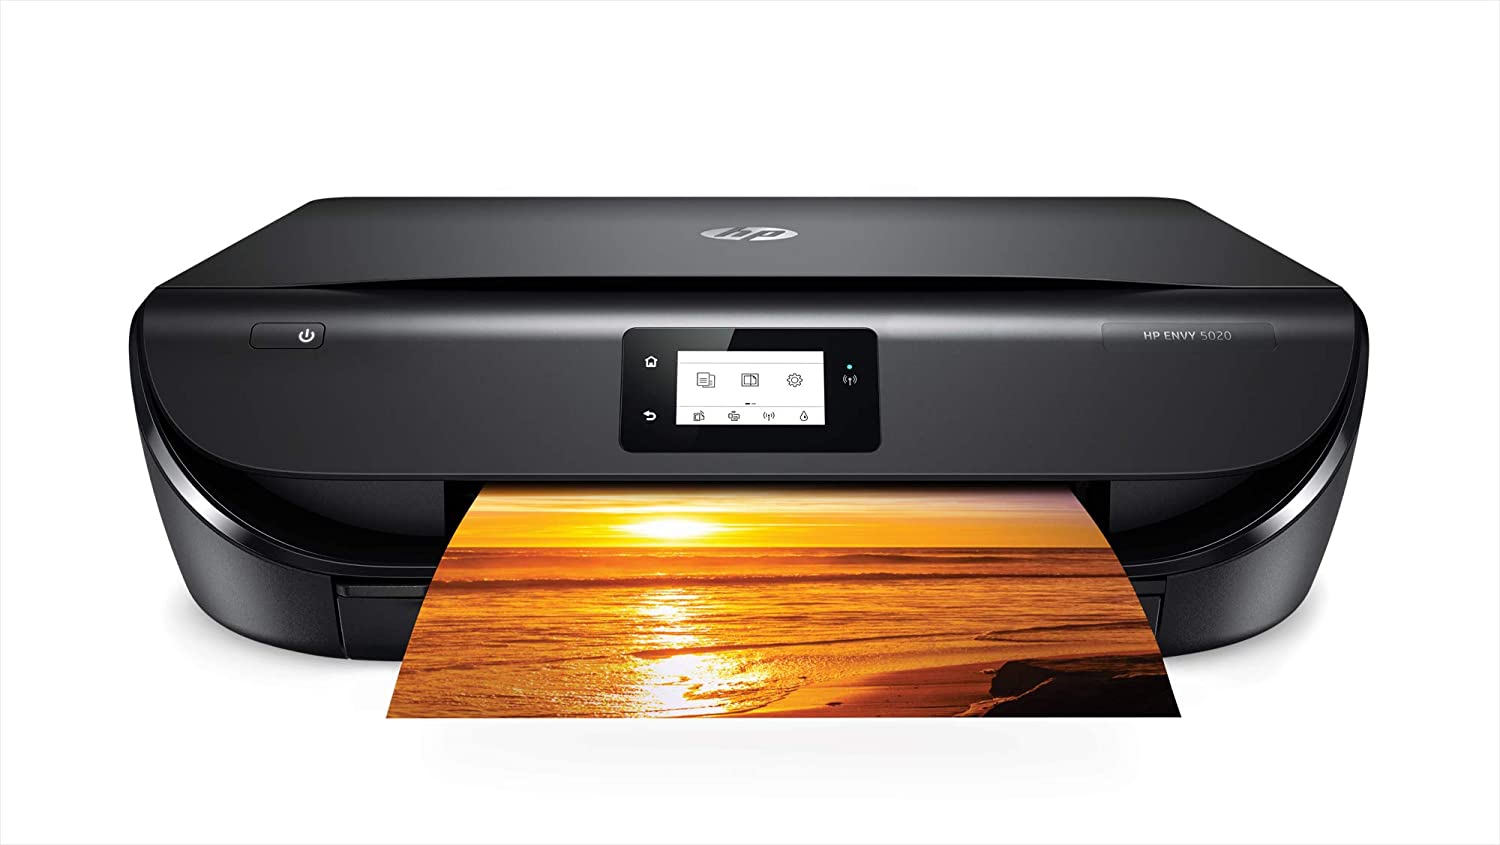 HP ENVY 5020 Multifunctional Printer uk reviews